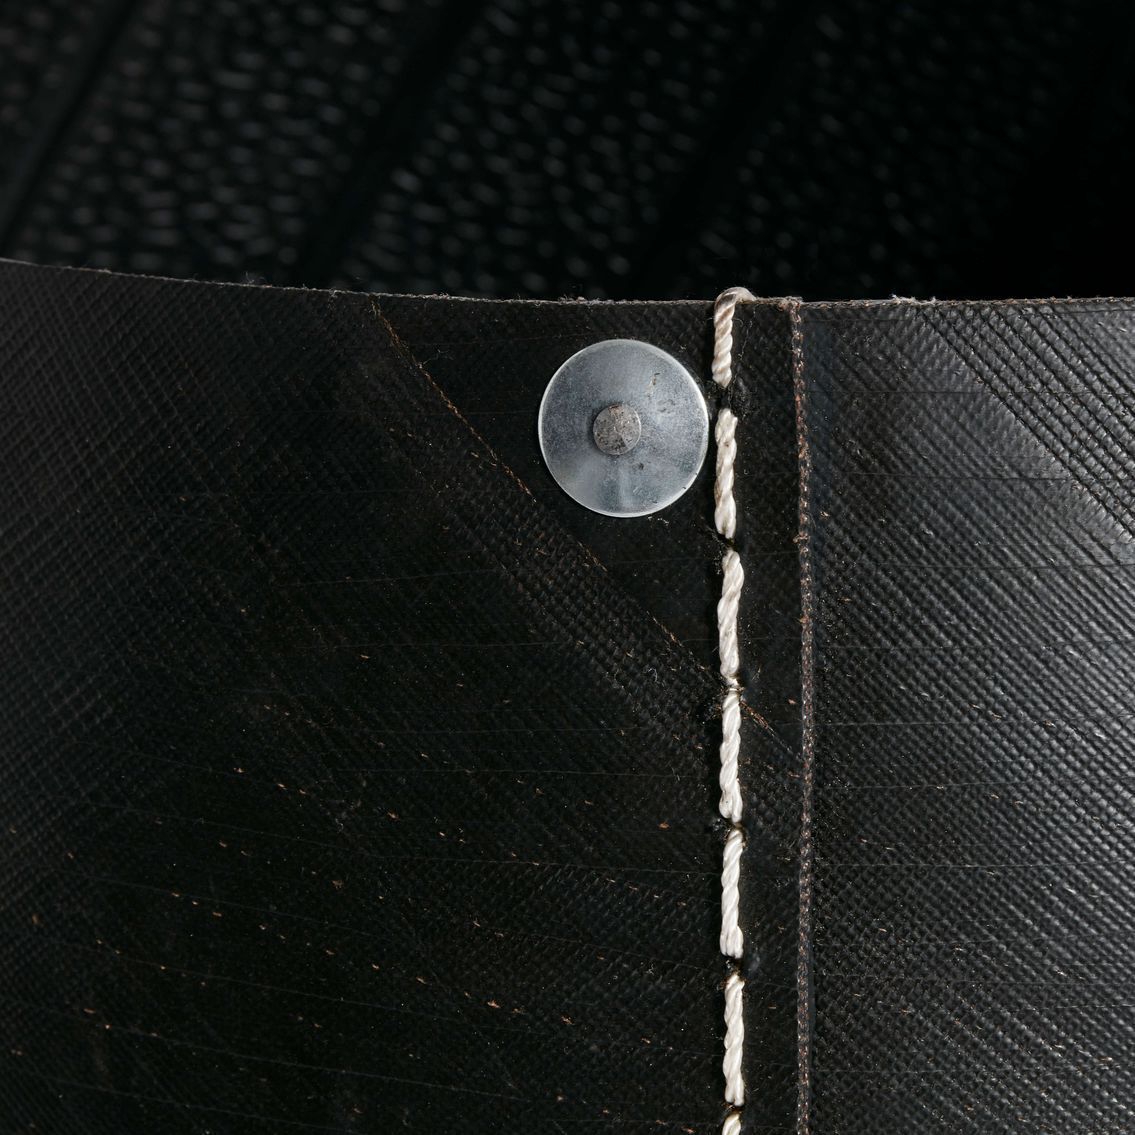 Muubs Panier de blanchisserie Dacarr noir, 60 cm